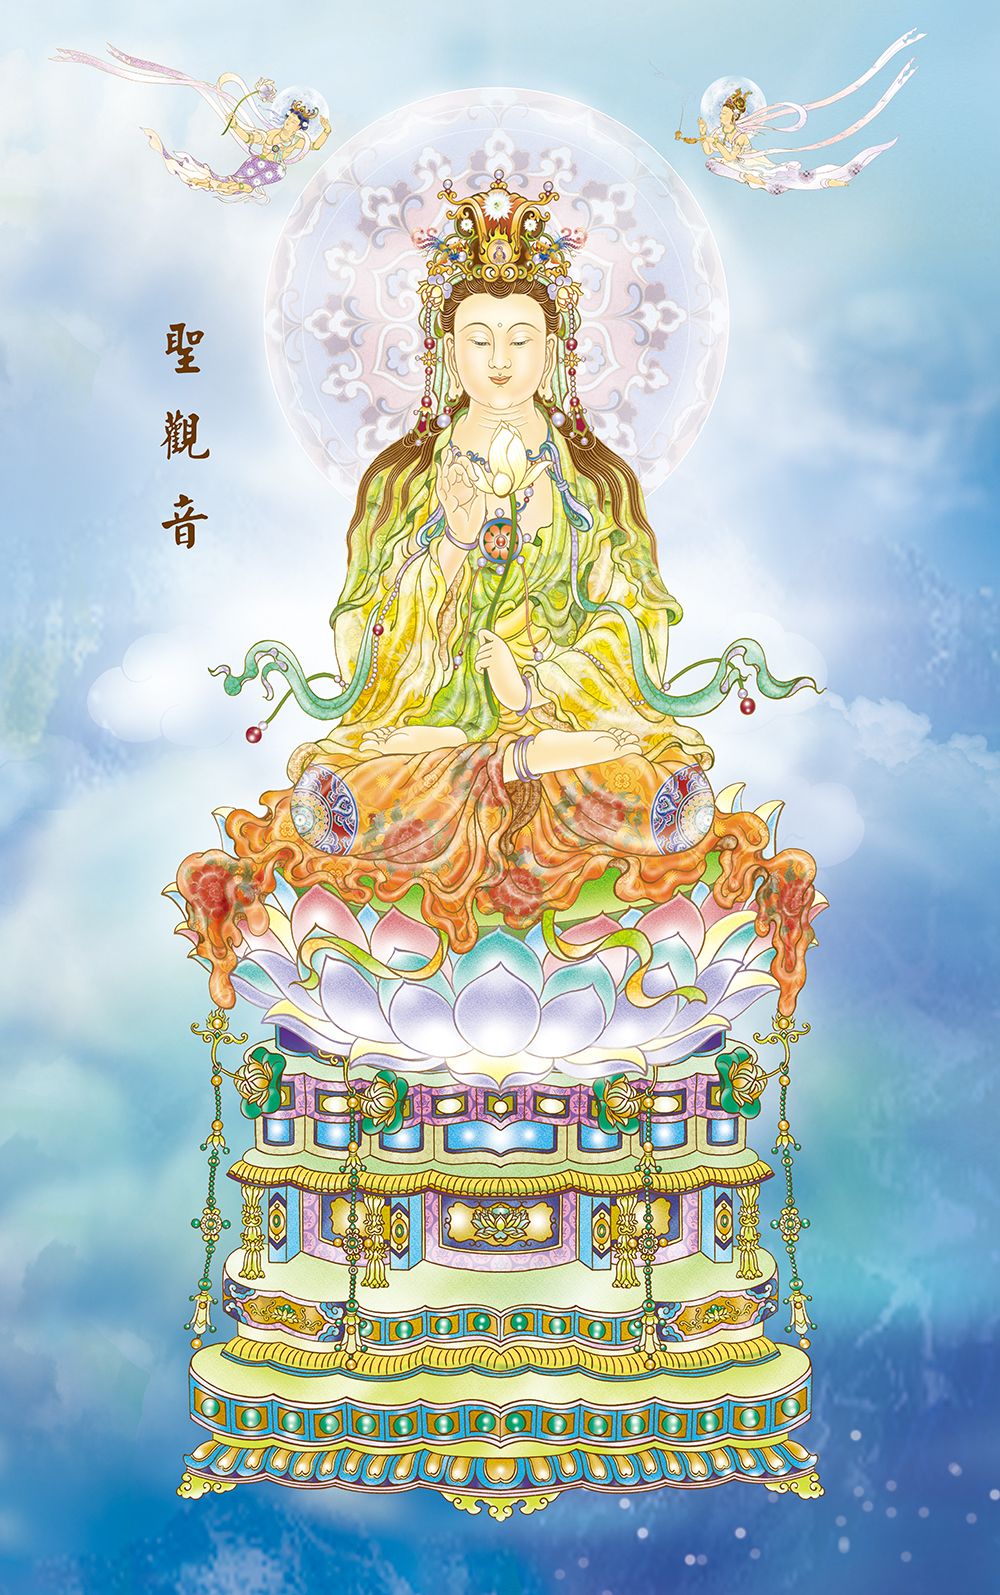 Holy Guan Yin (聖觀音)